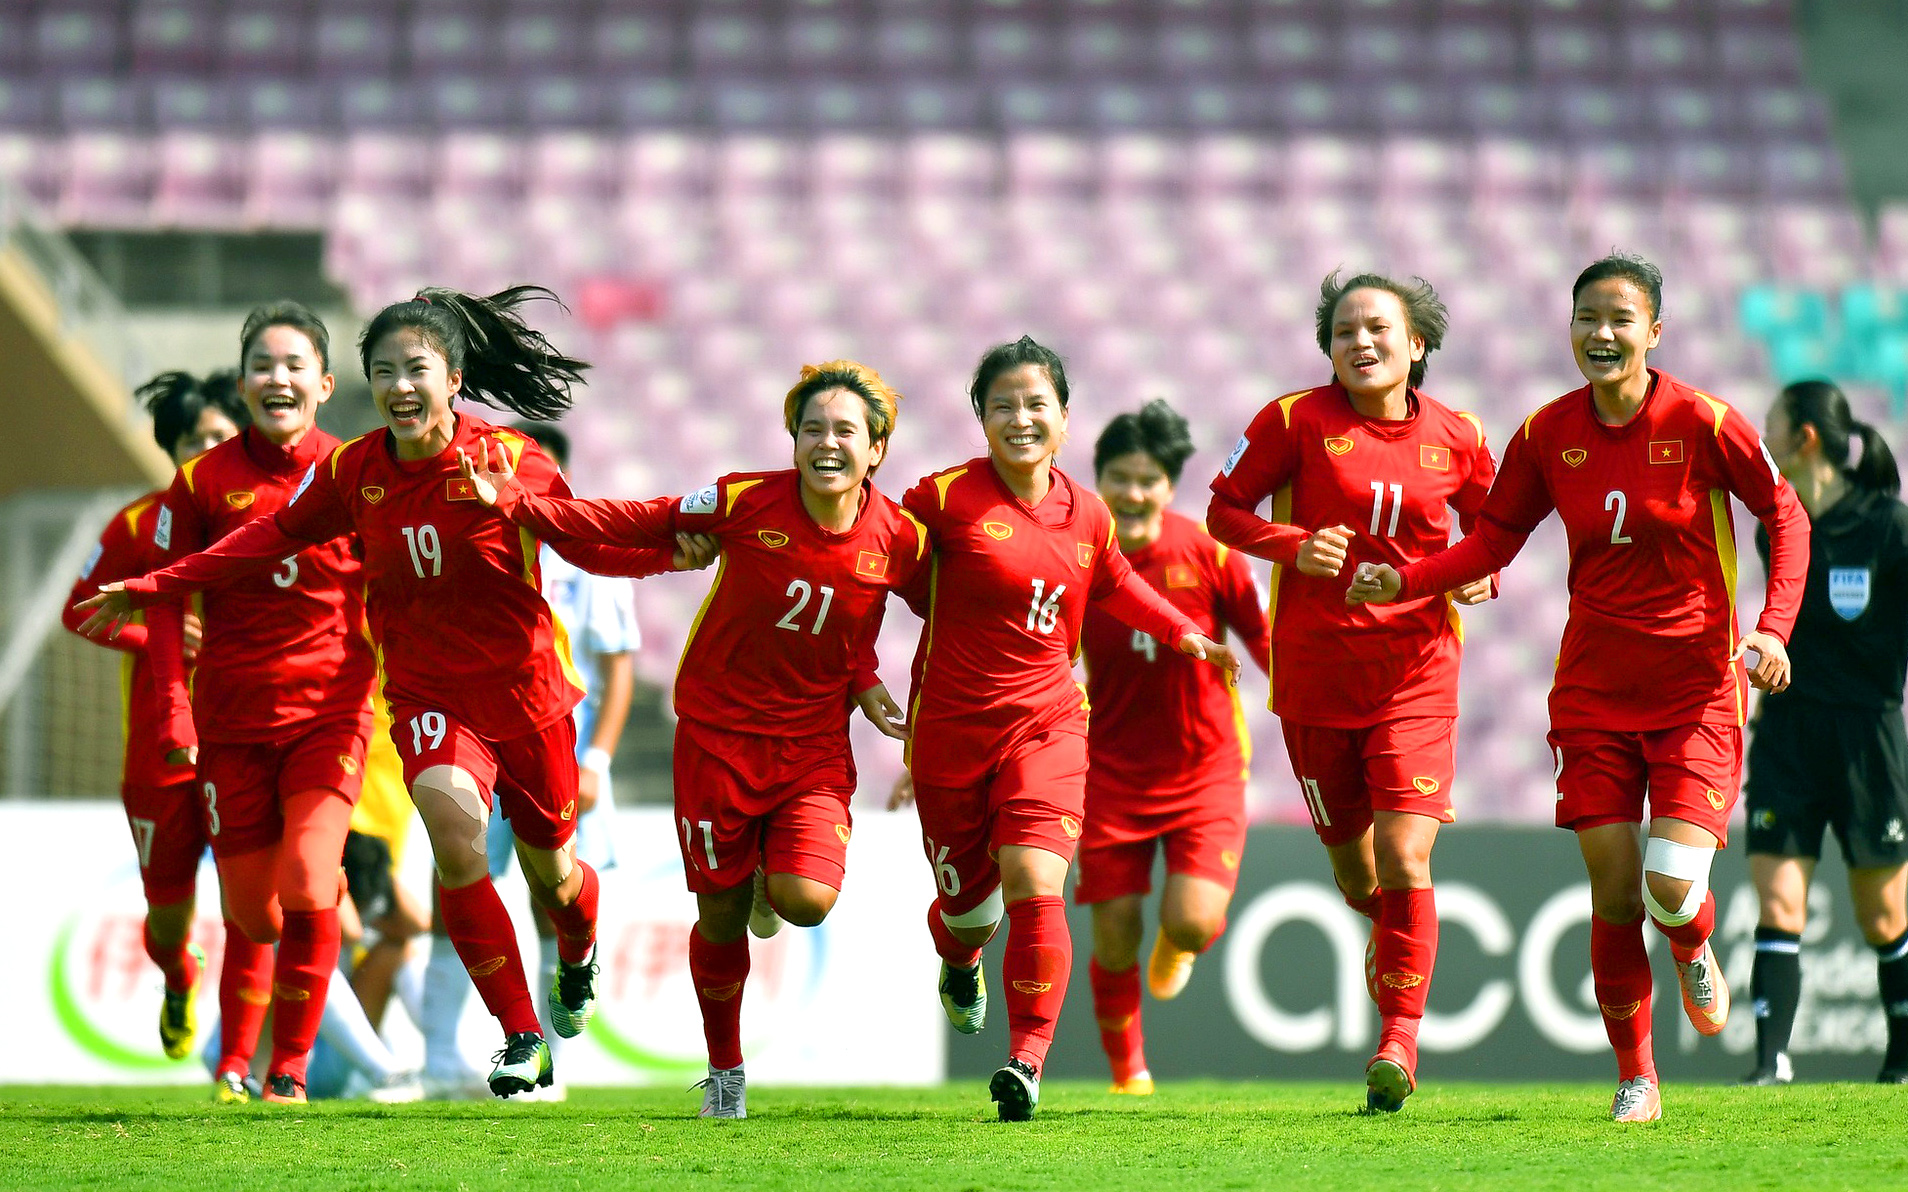 Thể thao Việt Nam và các sự kiện trong năm 2023 - Báo Người lao động